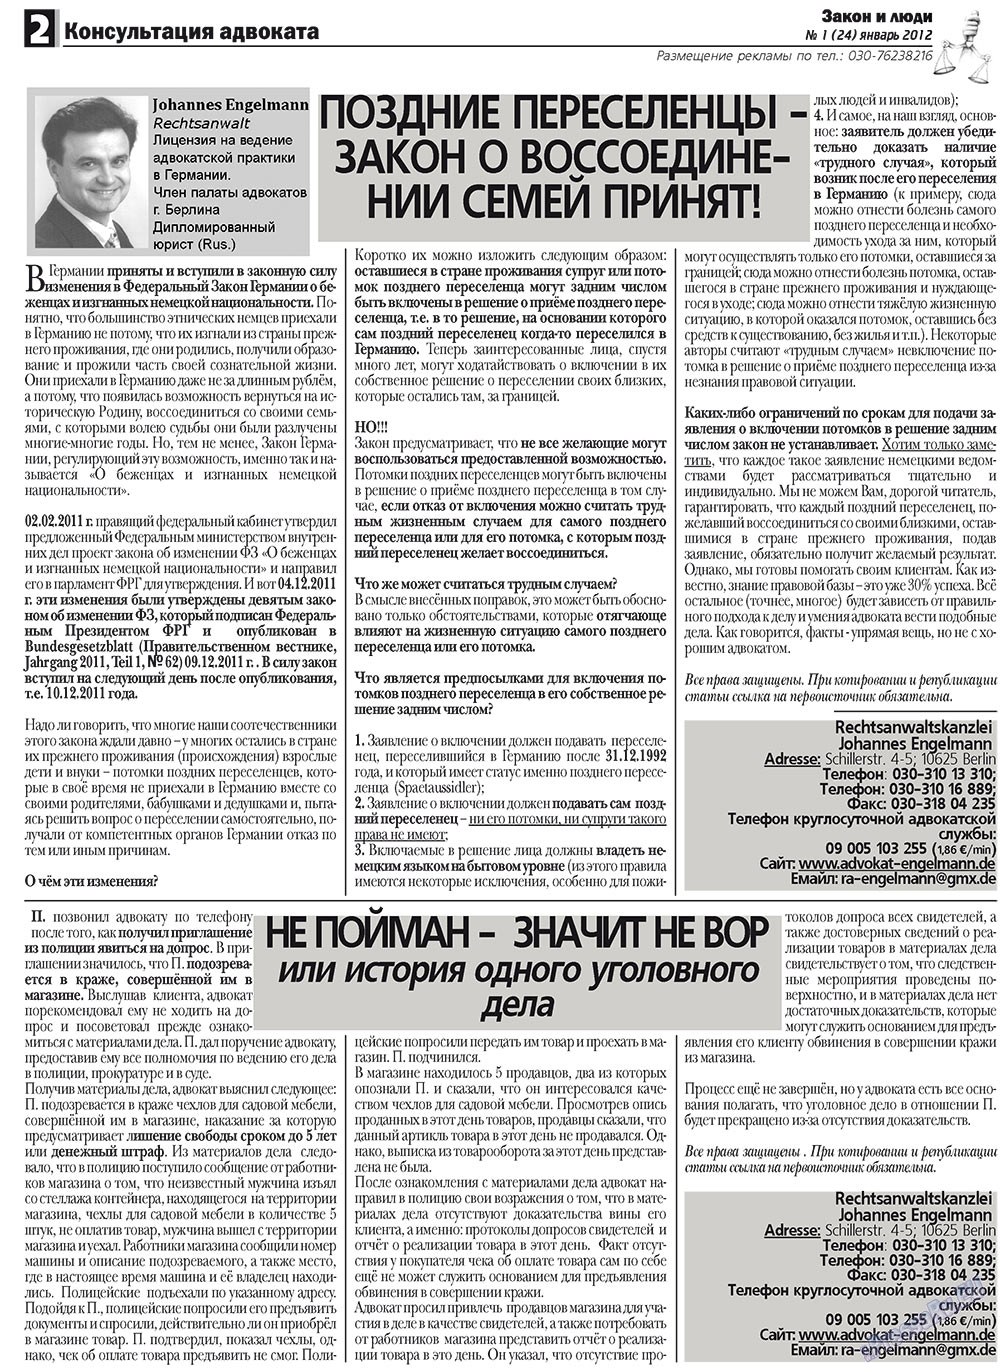 Закон и люди, газета. 2012 №1 стр.2